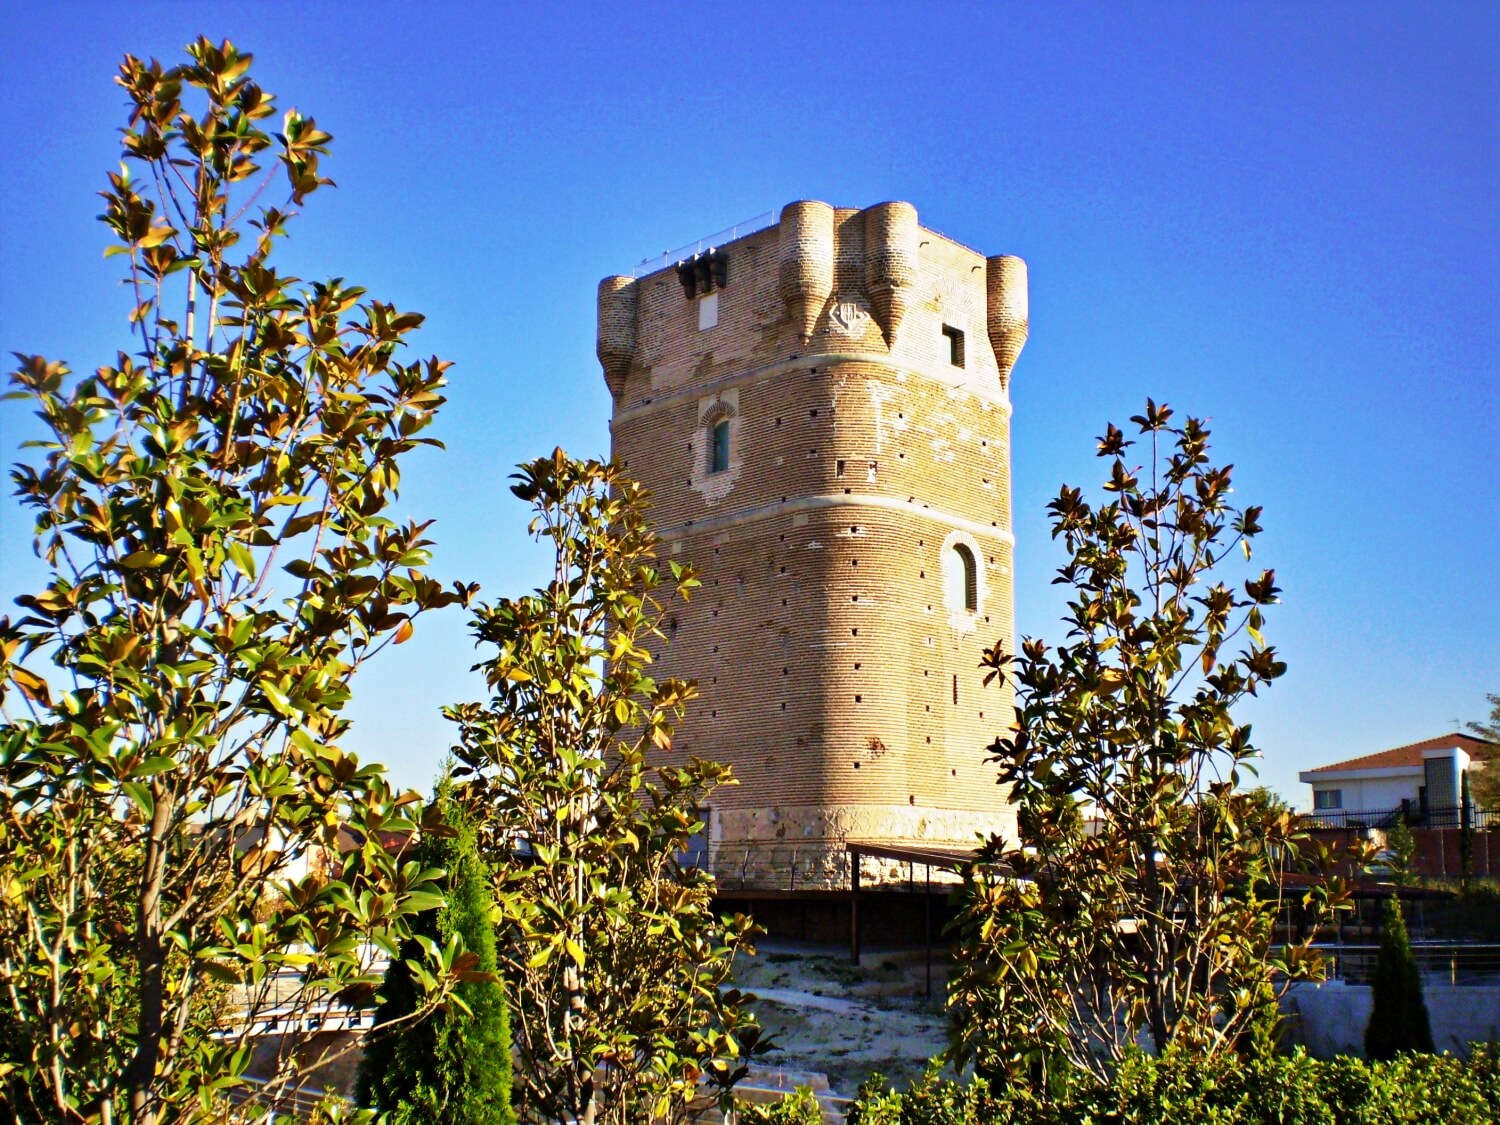 The Tower of Arroyomolinos